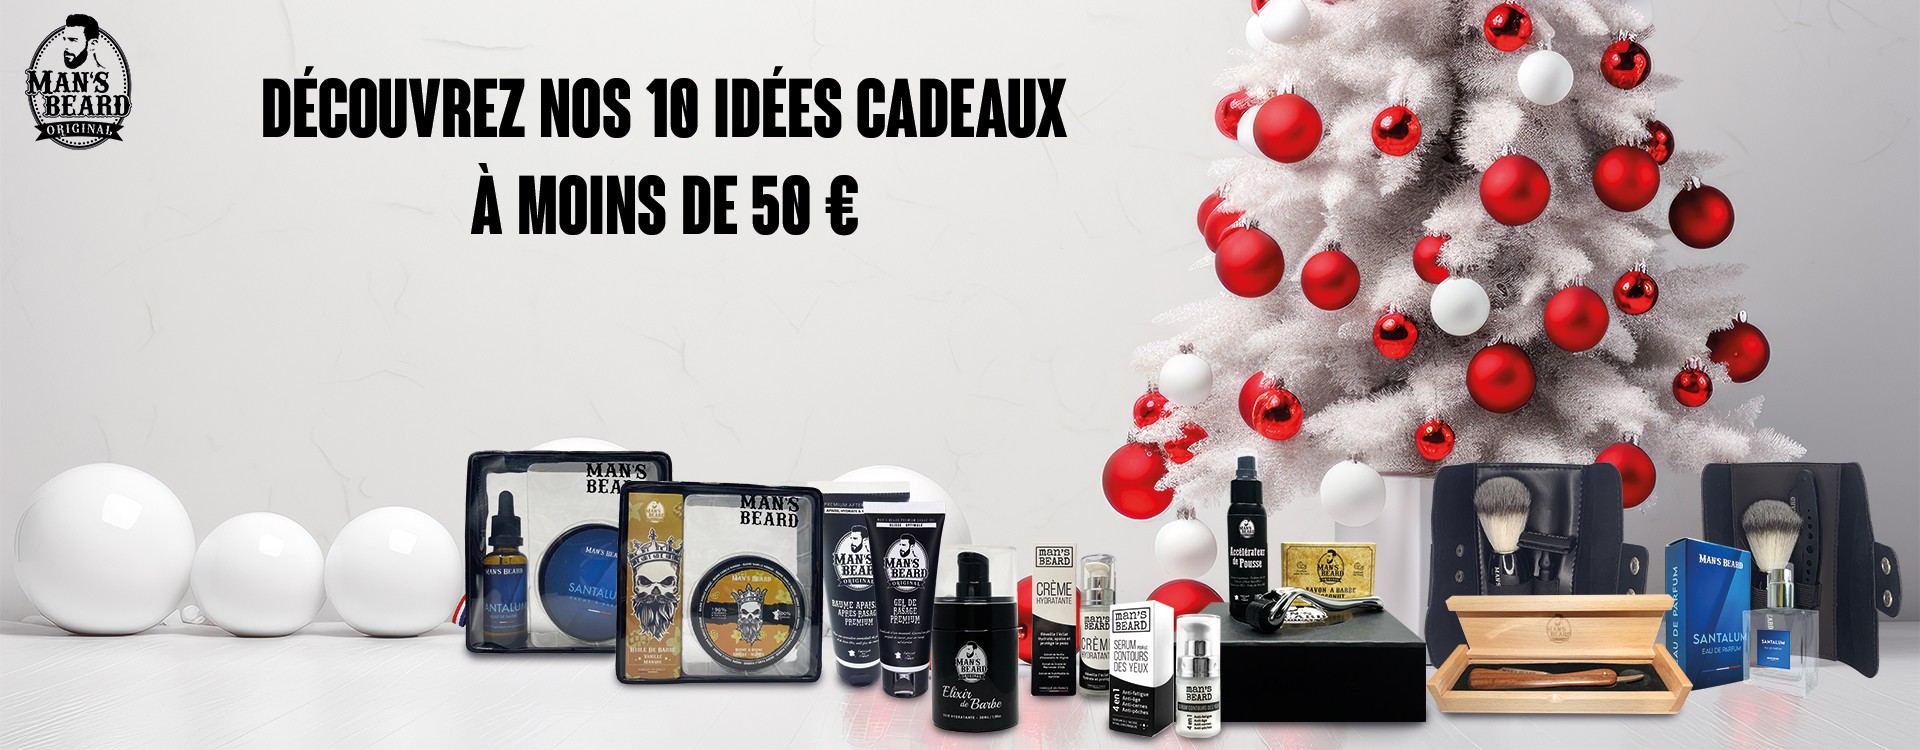 28 Idées de Cadeaux Originales Pour Noel A Moins de 5 Euros  Idées cadeaux,  Cadeau de noel original, Idée cadeau original